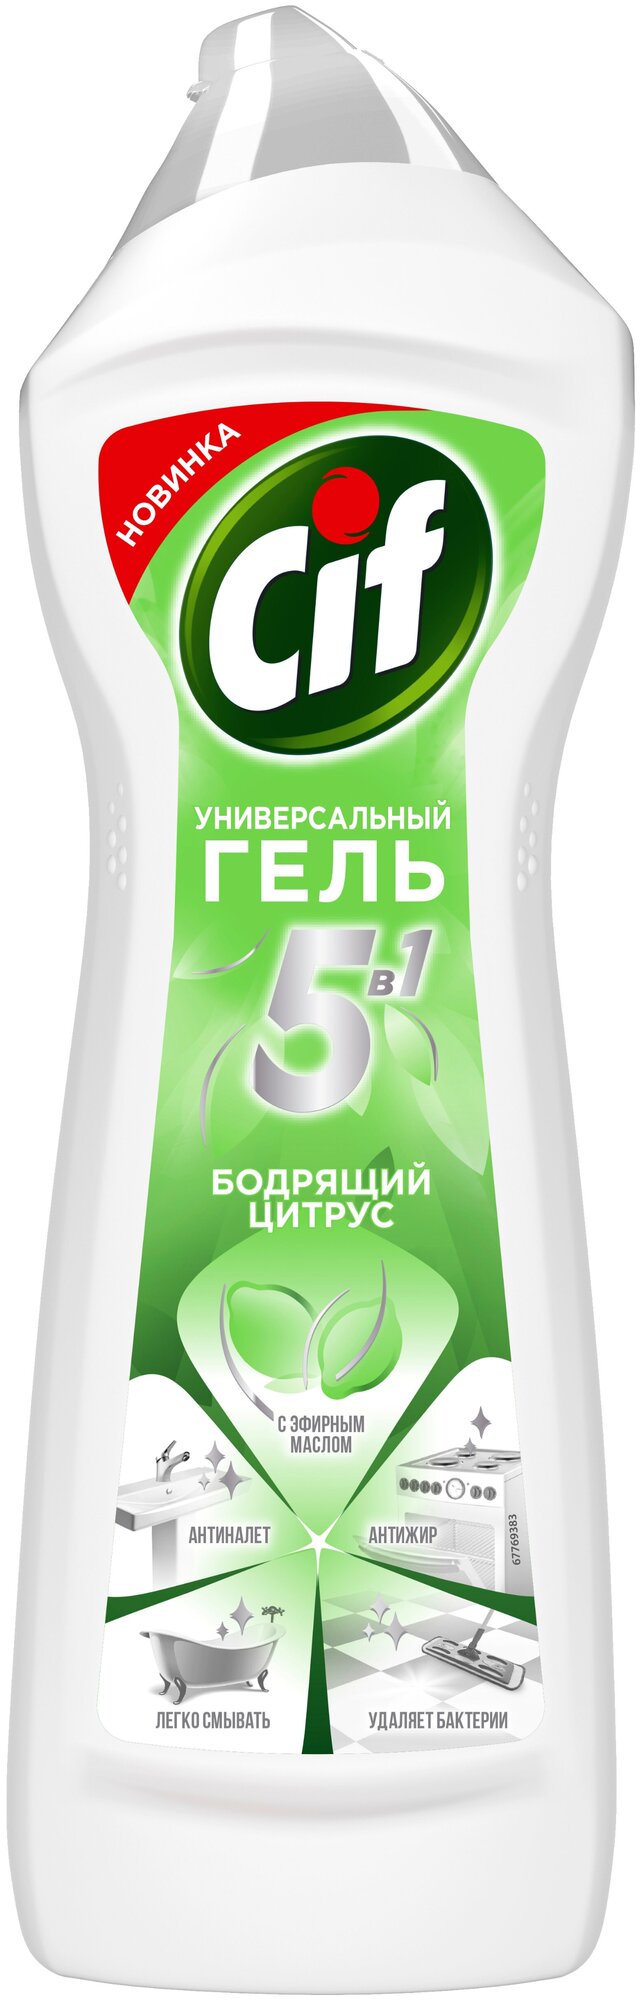 Крем чистящий универсальный Cif Бодрящий цитрус 750мл Unilever - фото №1